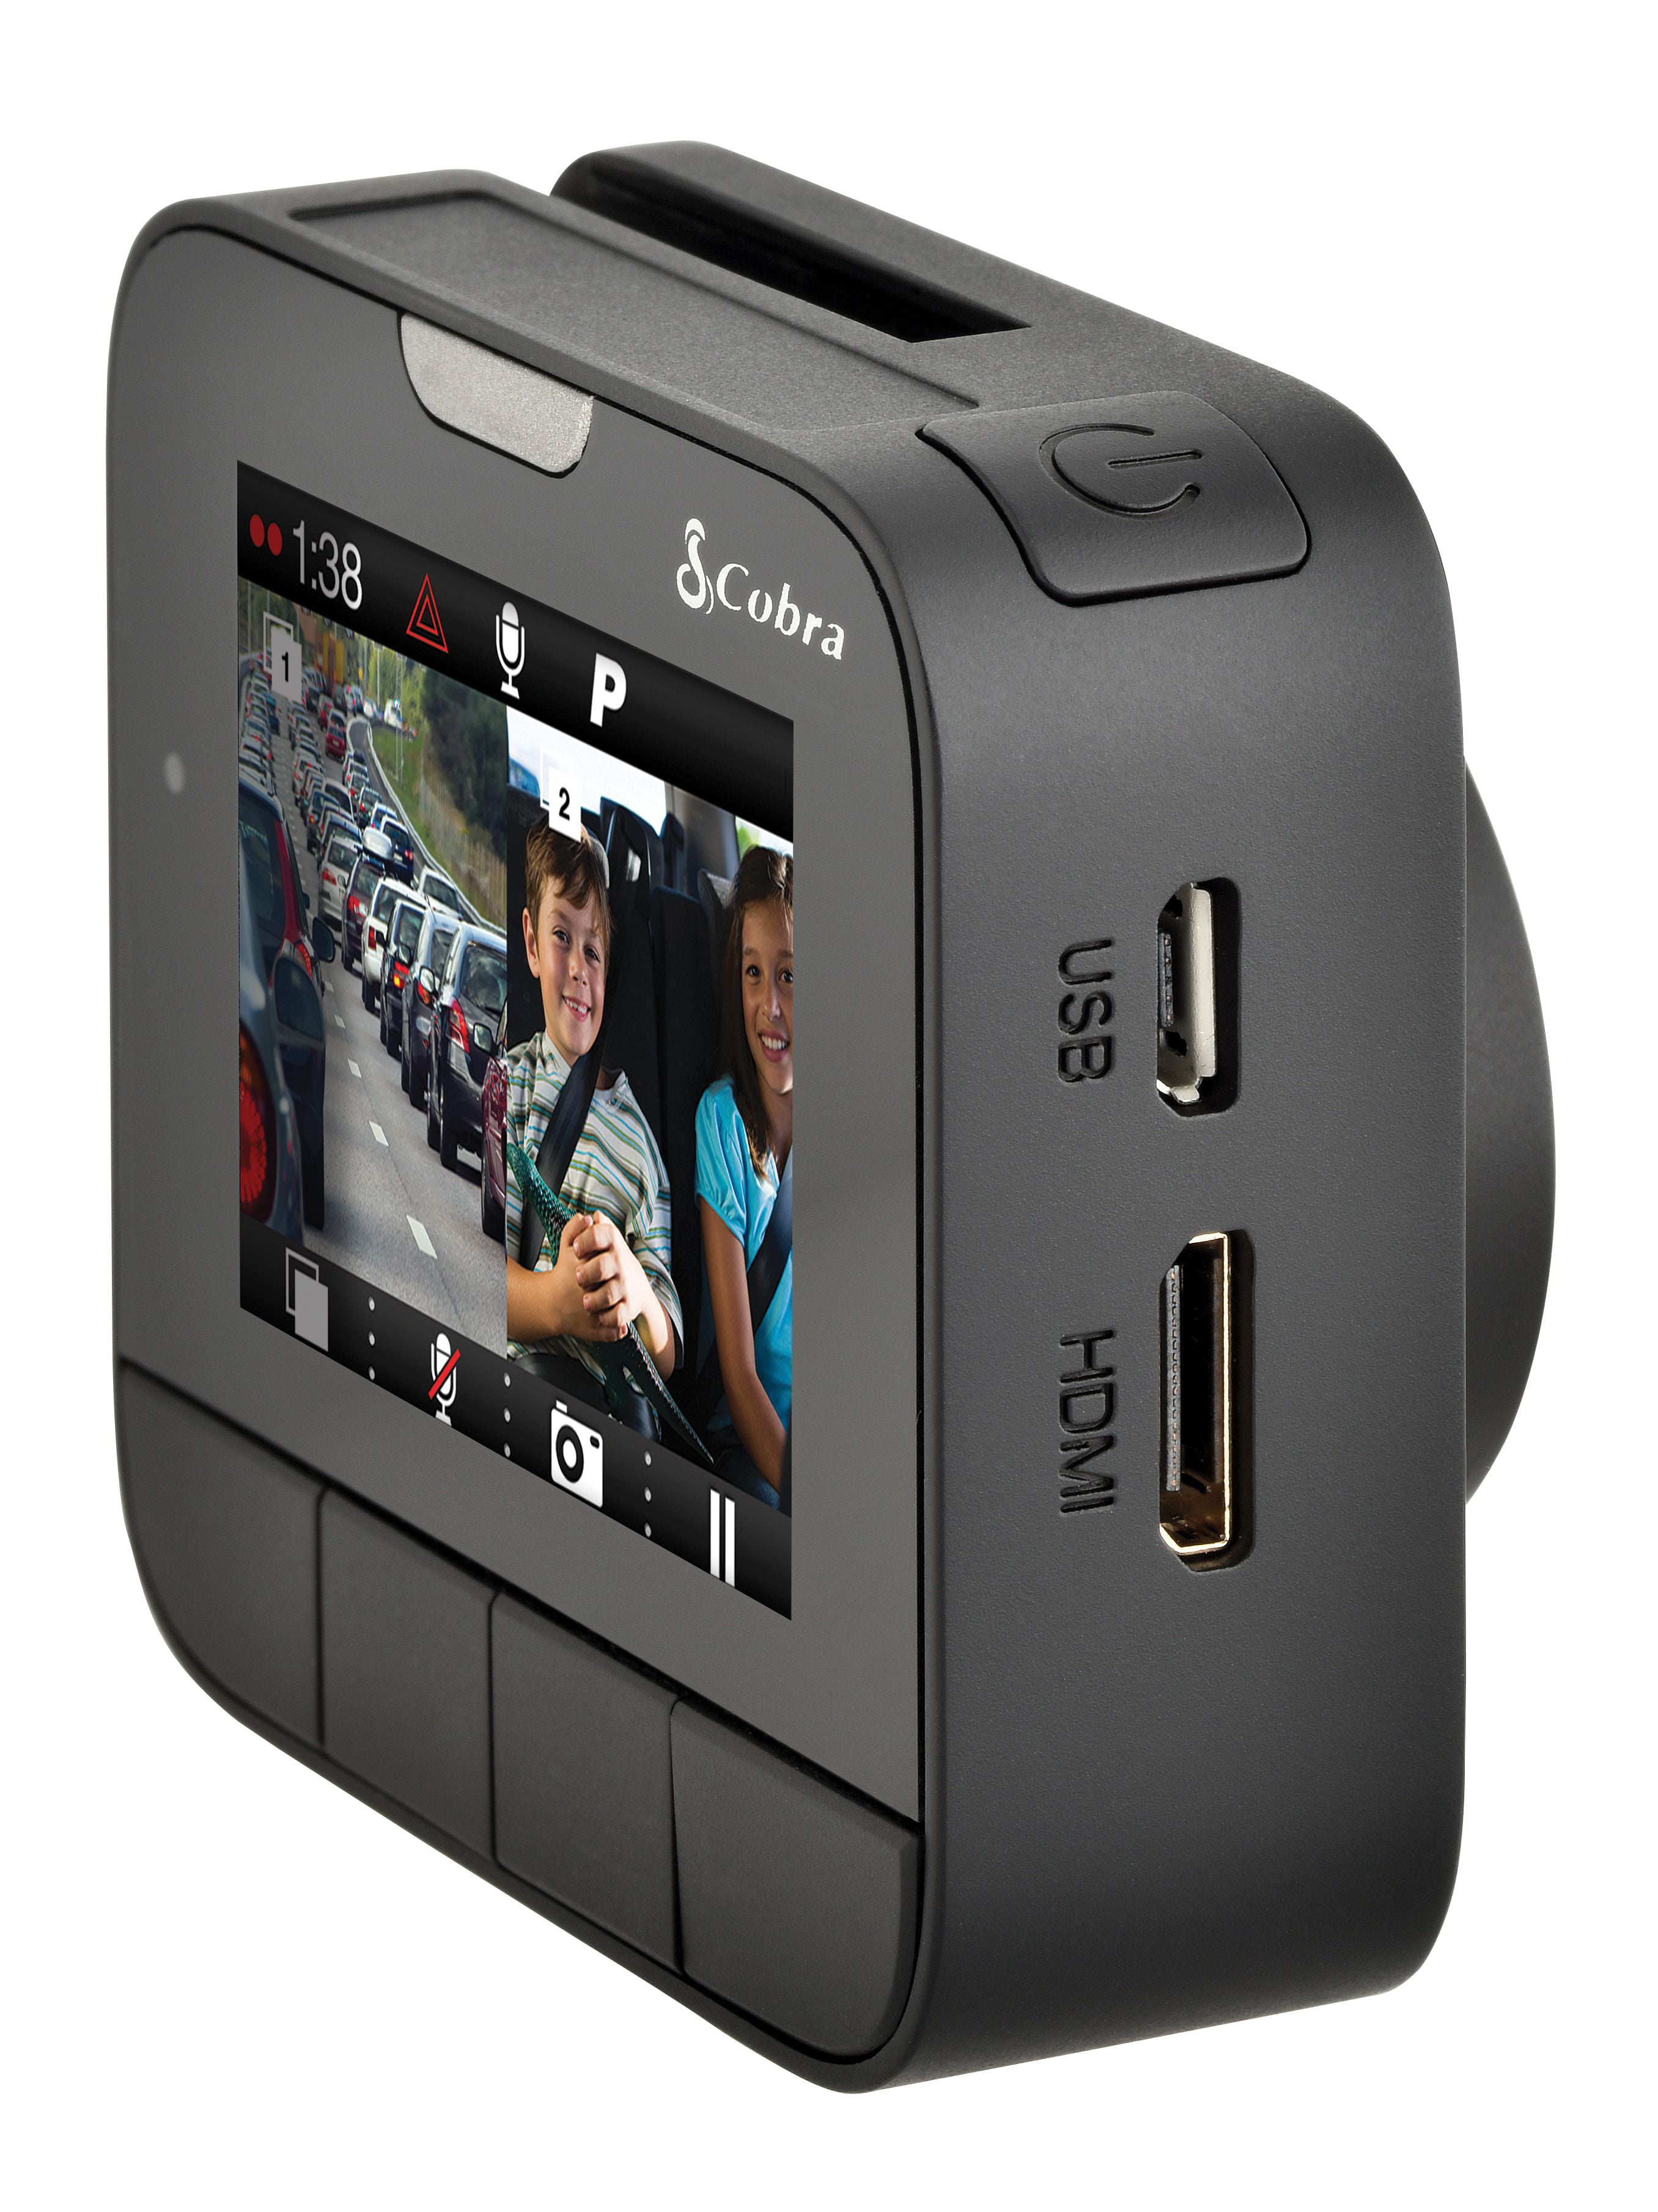 Cobra announces 4 new dash cams at CES2020, including one with  Alexa